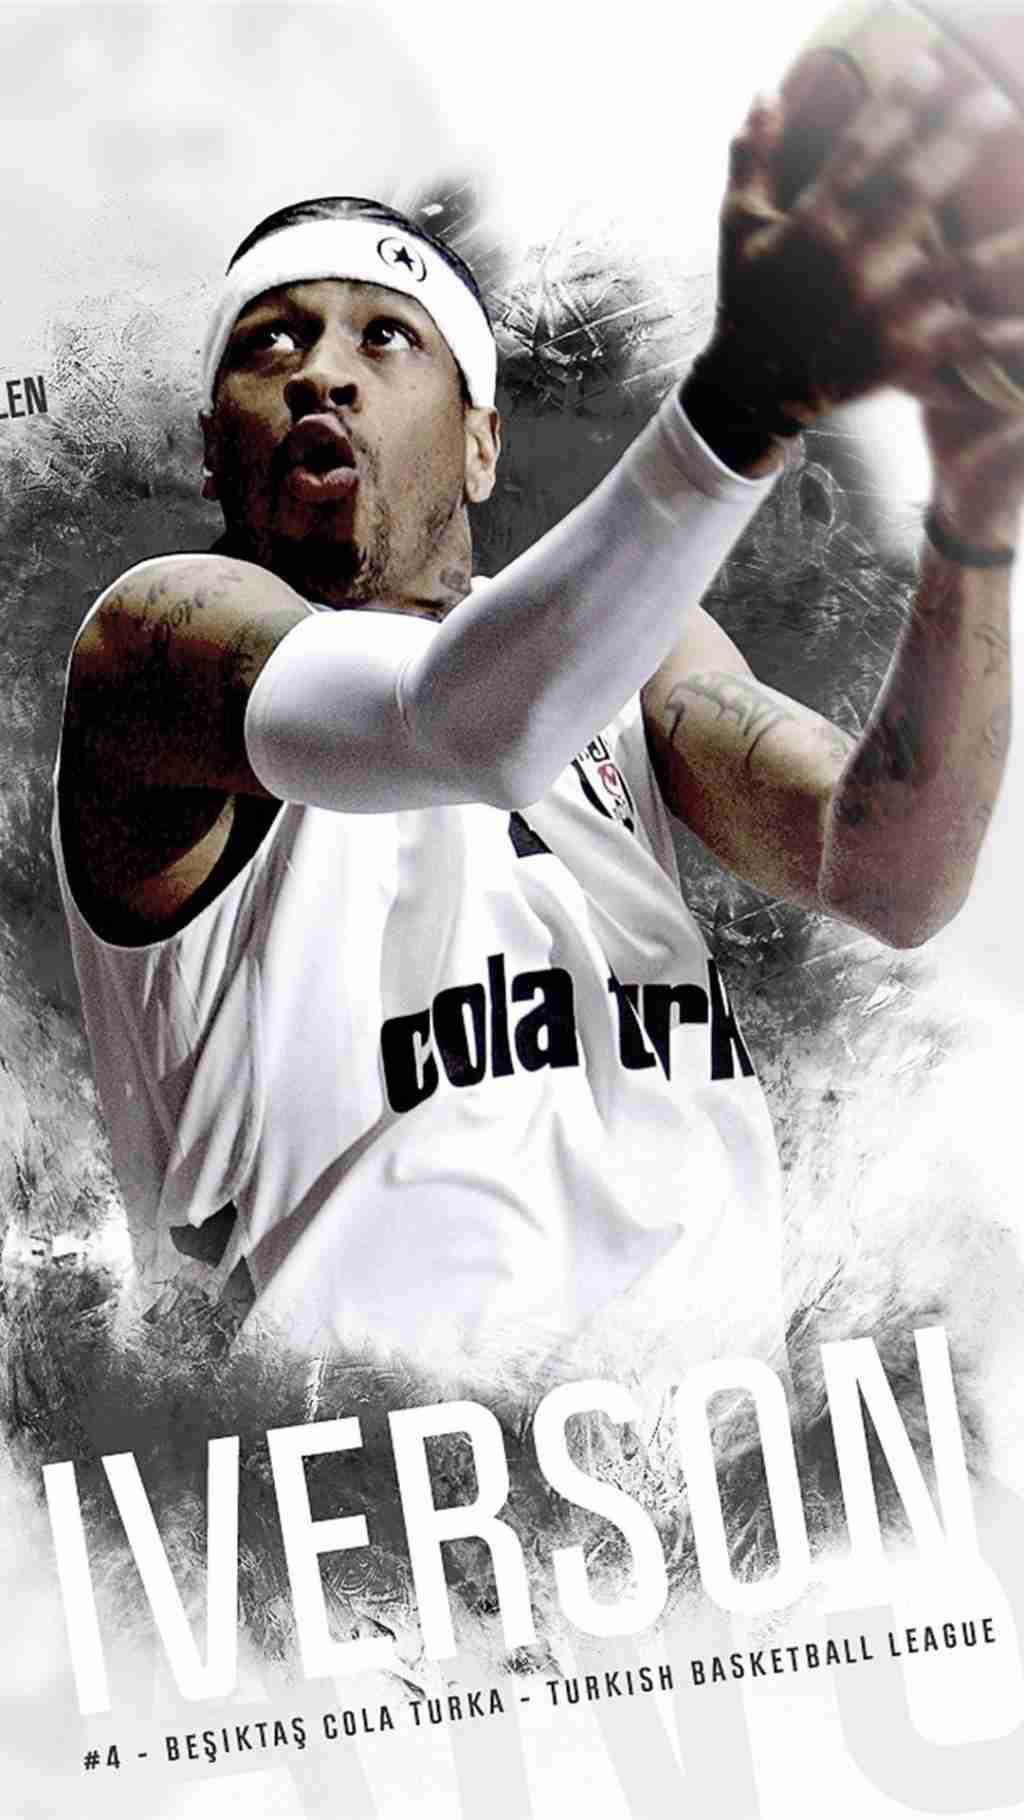 职业篮球运动员阿伦·埃泽尔·艾弗森手机壁纸